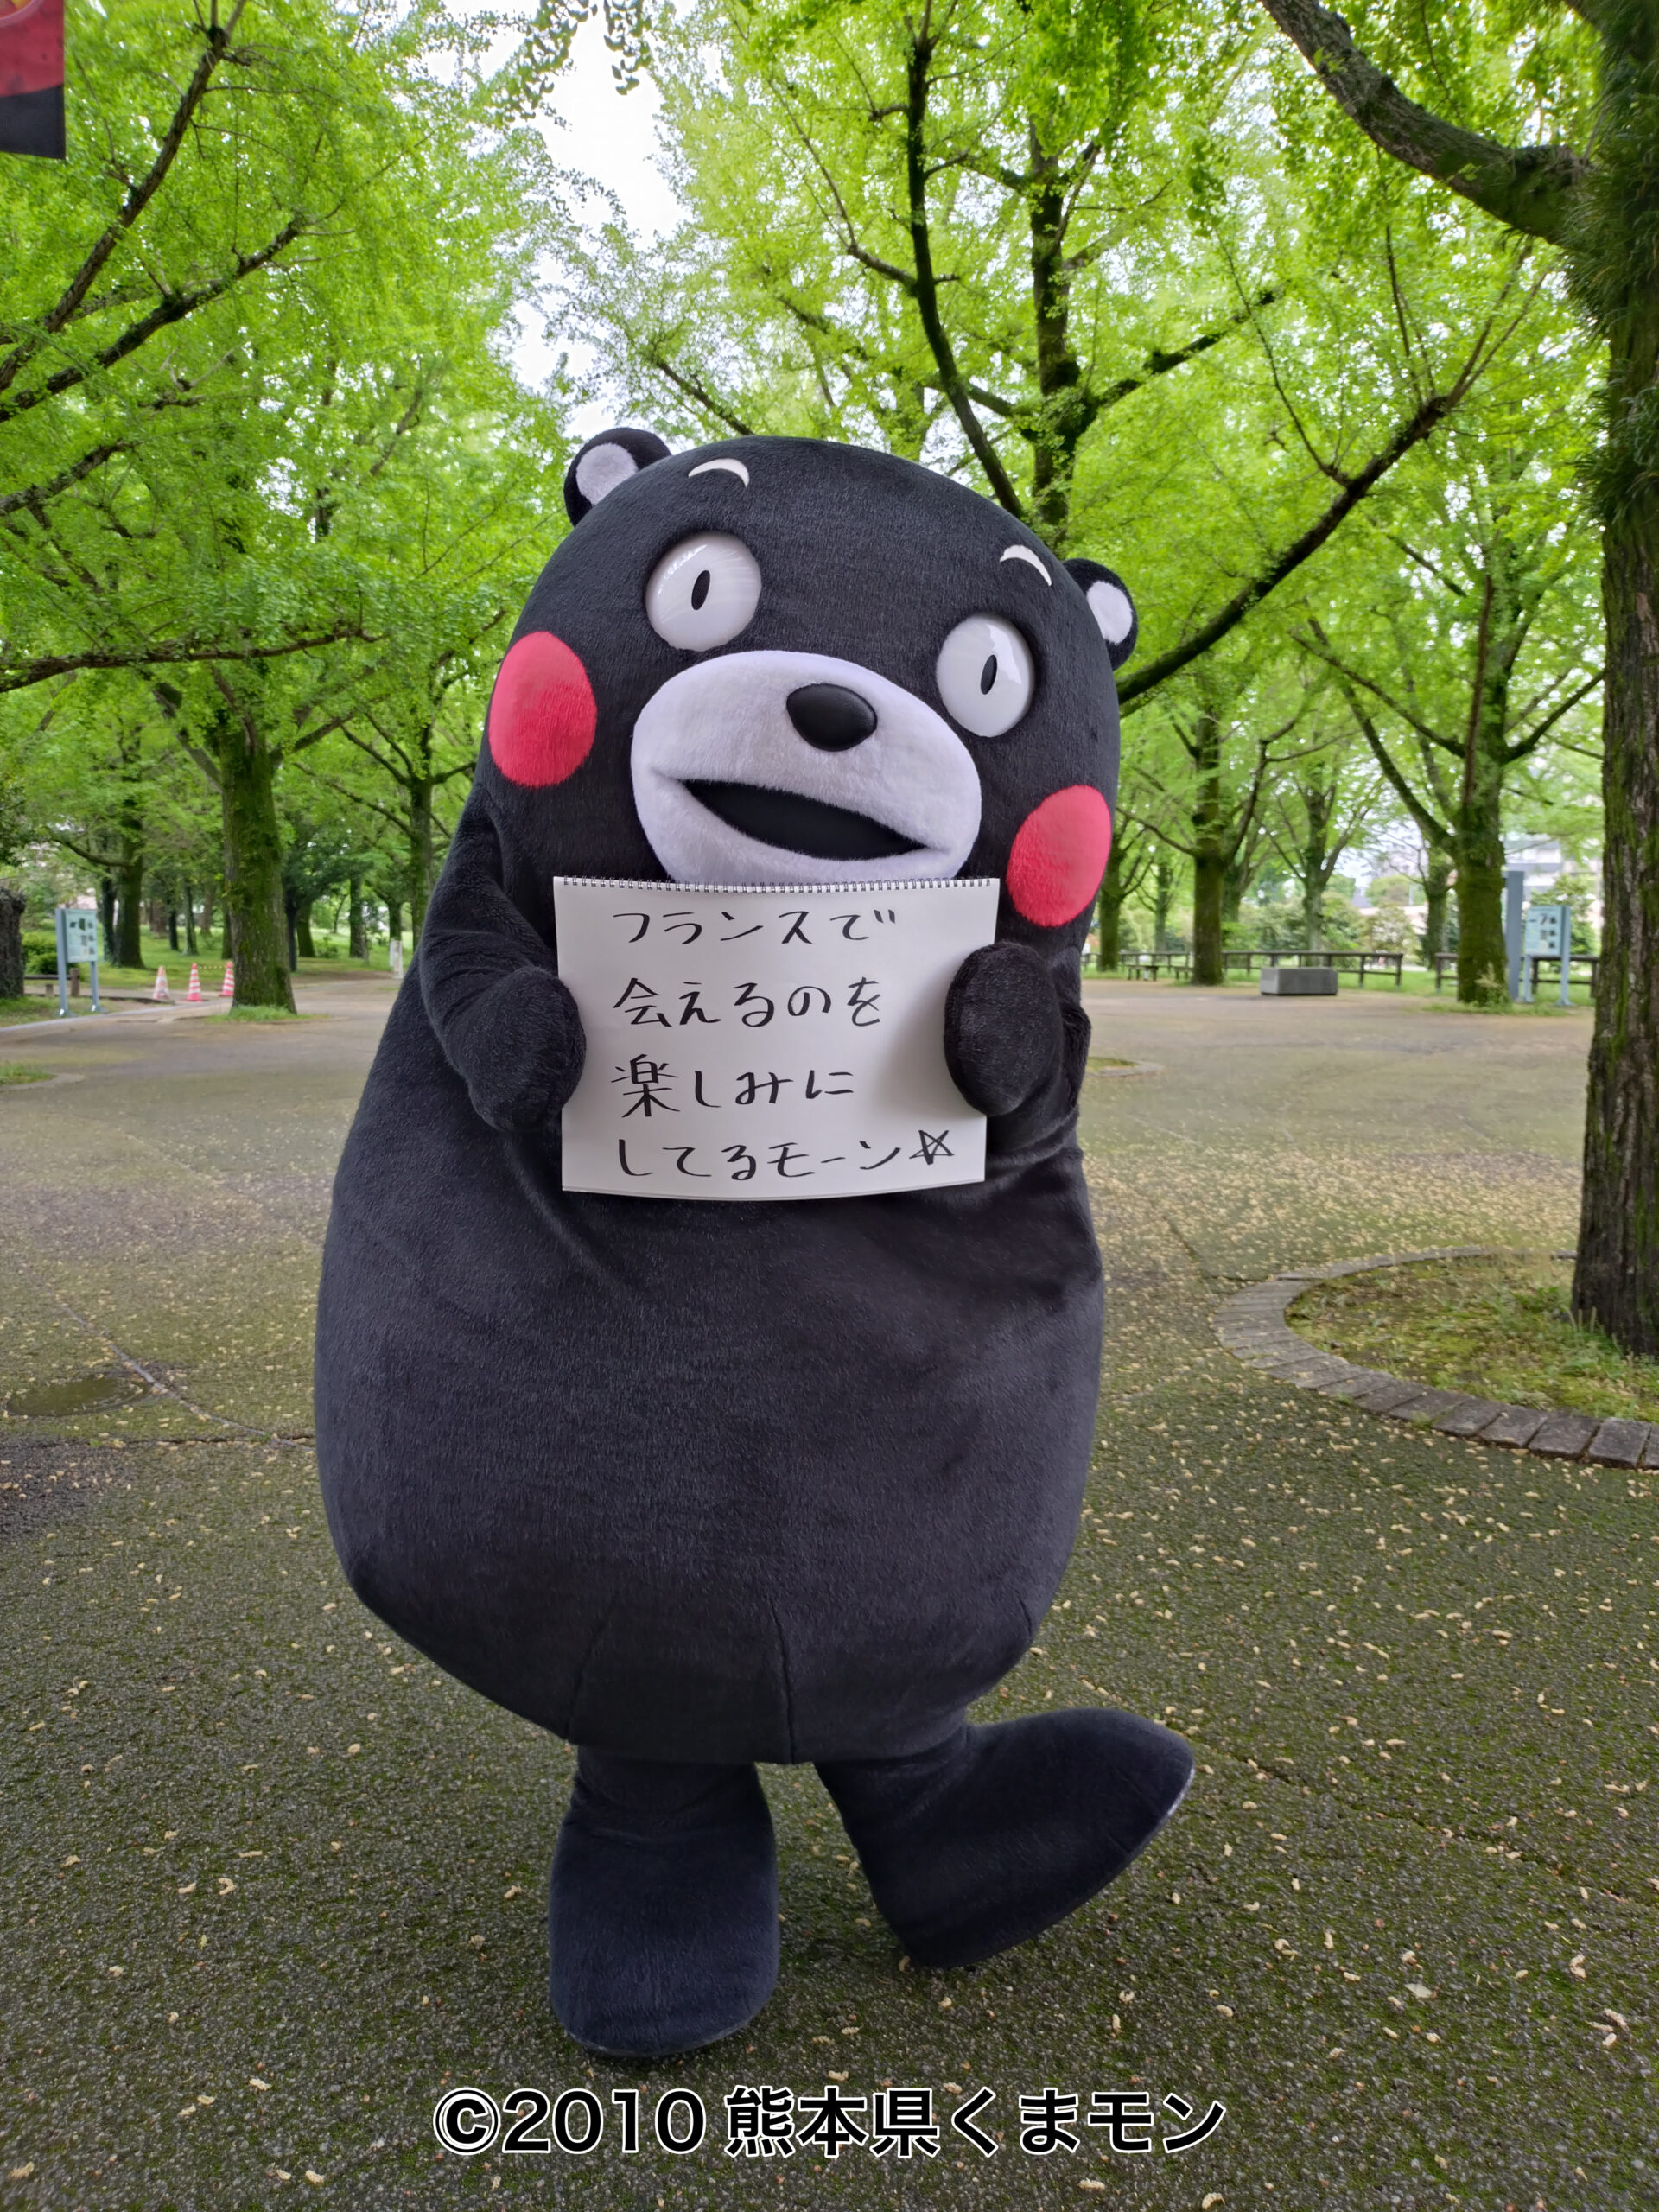 片足を上げたくまモンが公園で「フランスで会えるのを楽しみにしてるモーン☆」のメッセージを掲げている様子。